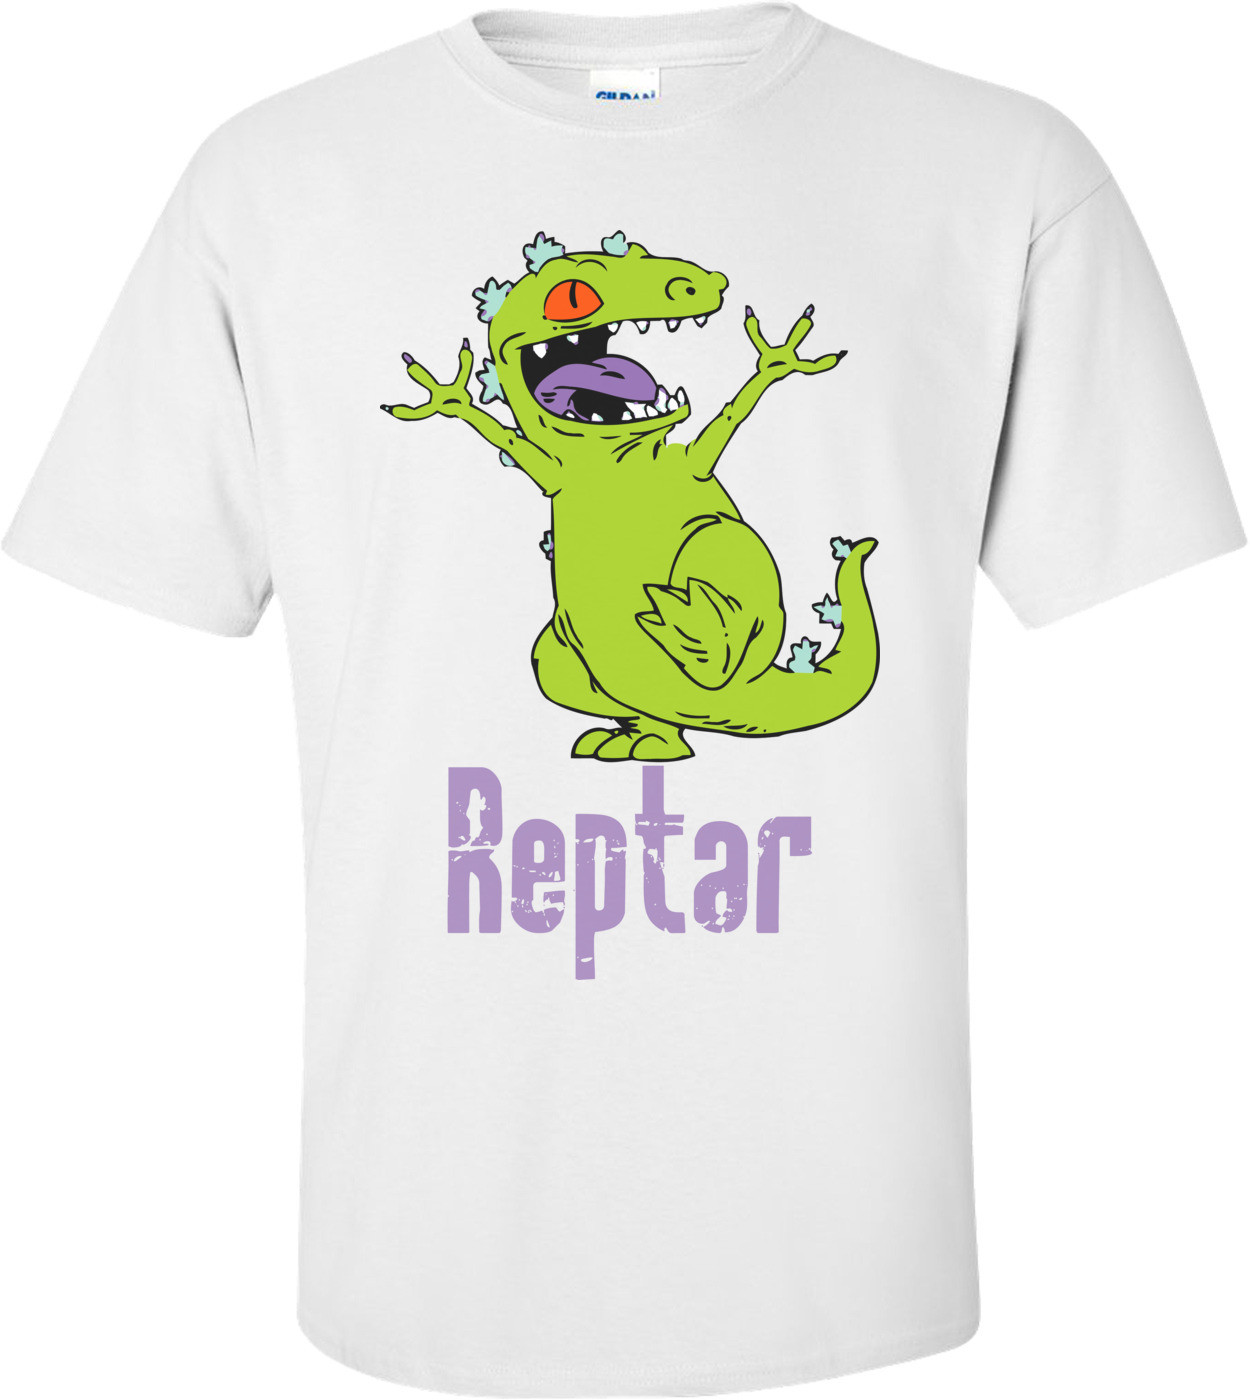 Reptar - Rugrats 